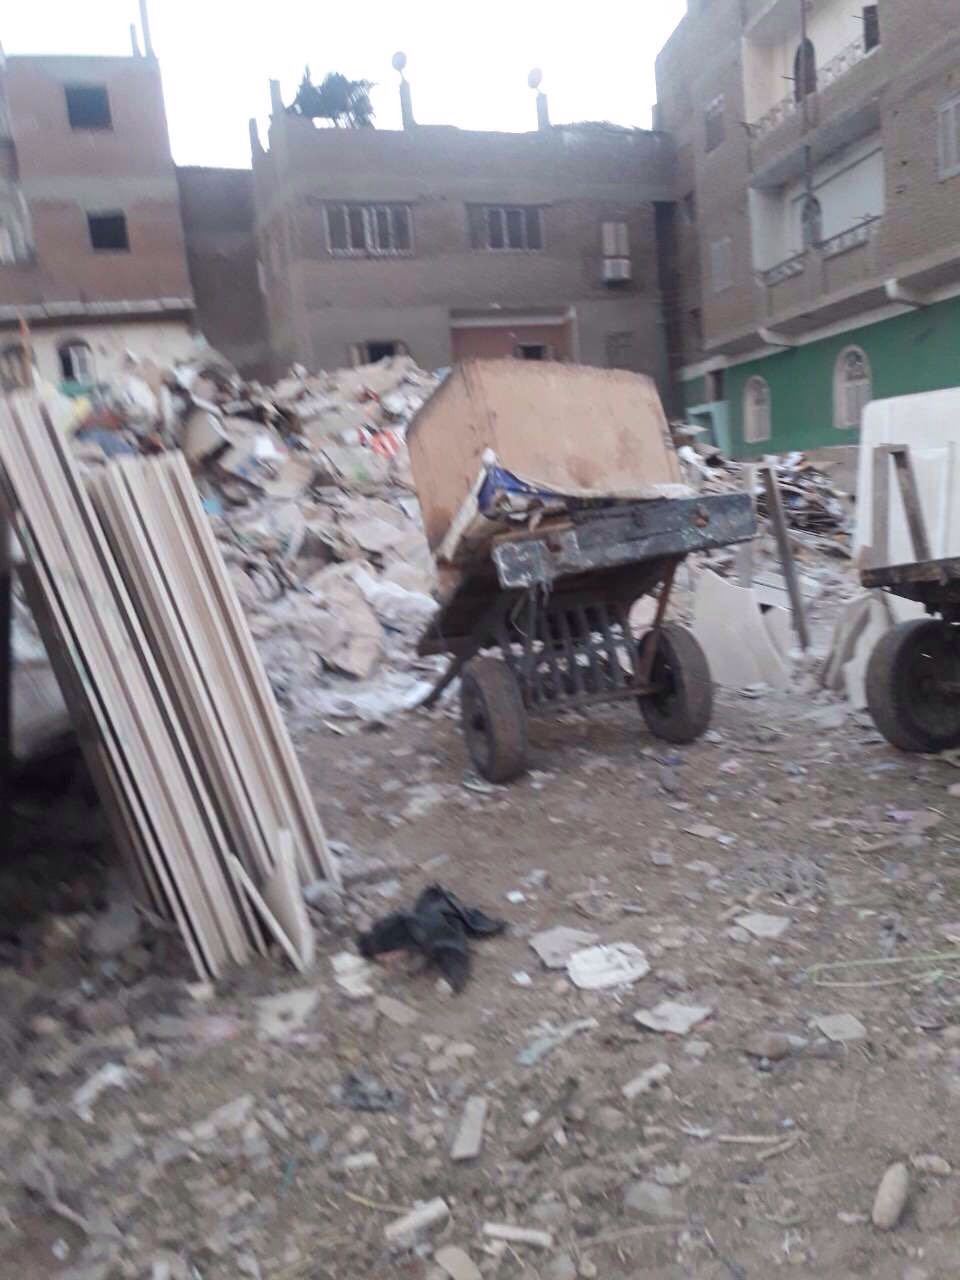 صورة أخرى توضح وجود القمامة بجوار المنازل